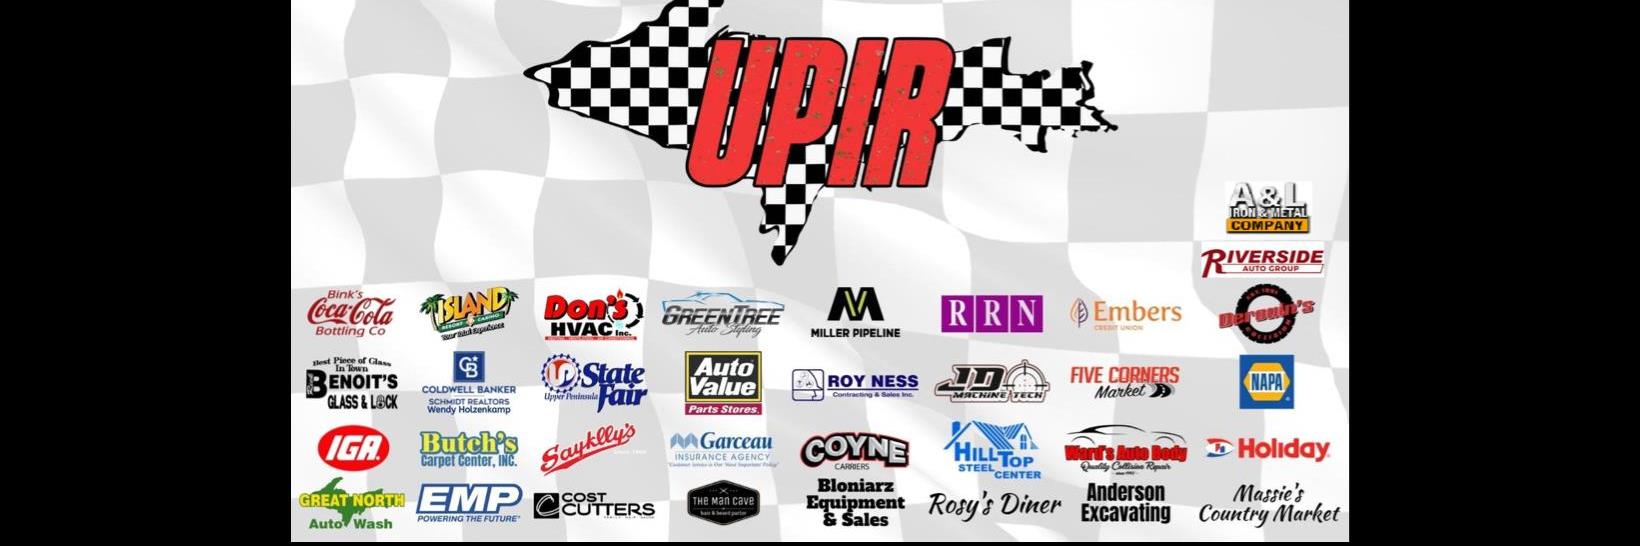 7/23/2022 - Upper Peninsula International Raceway